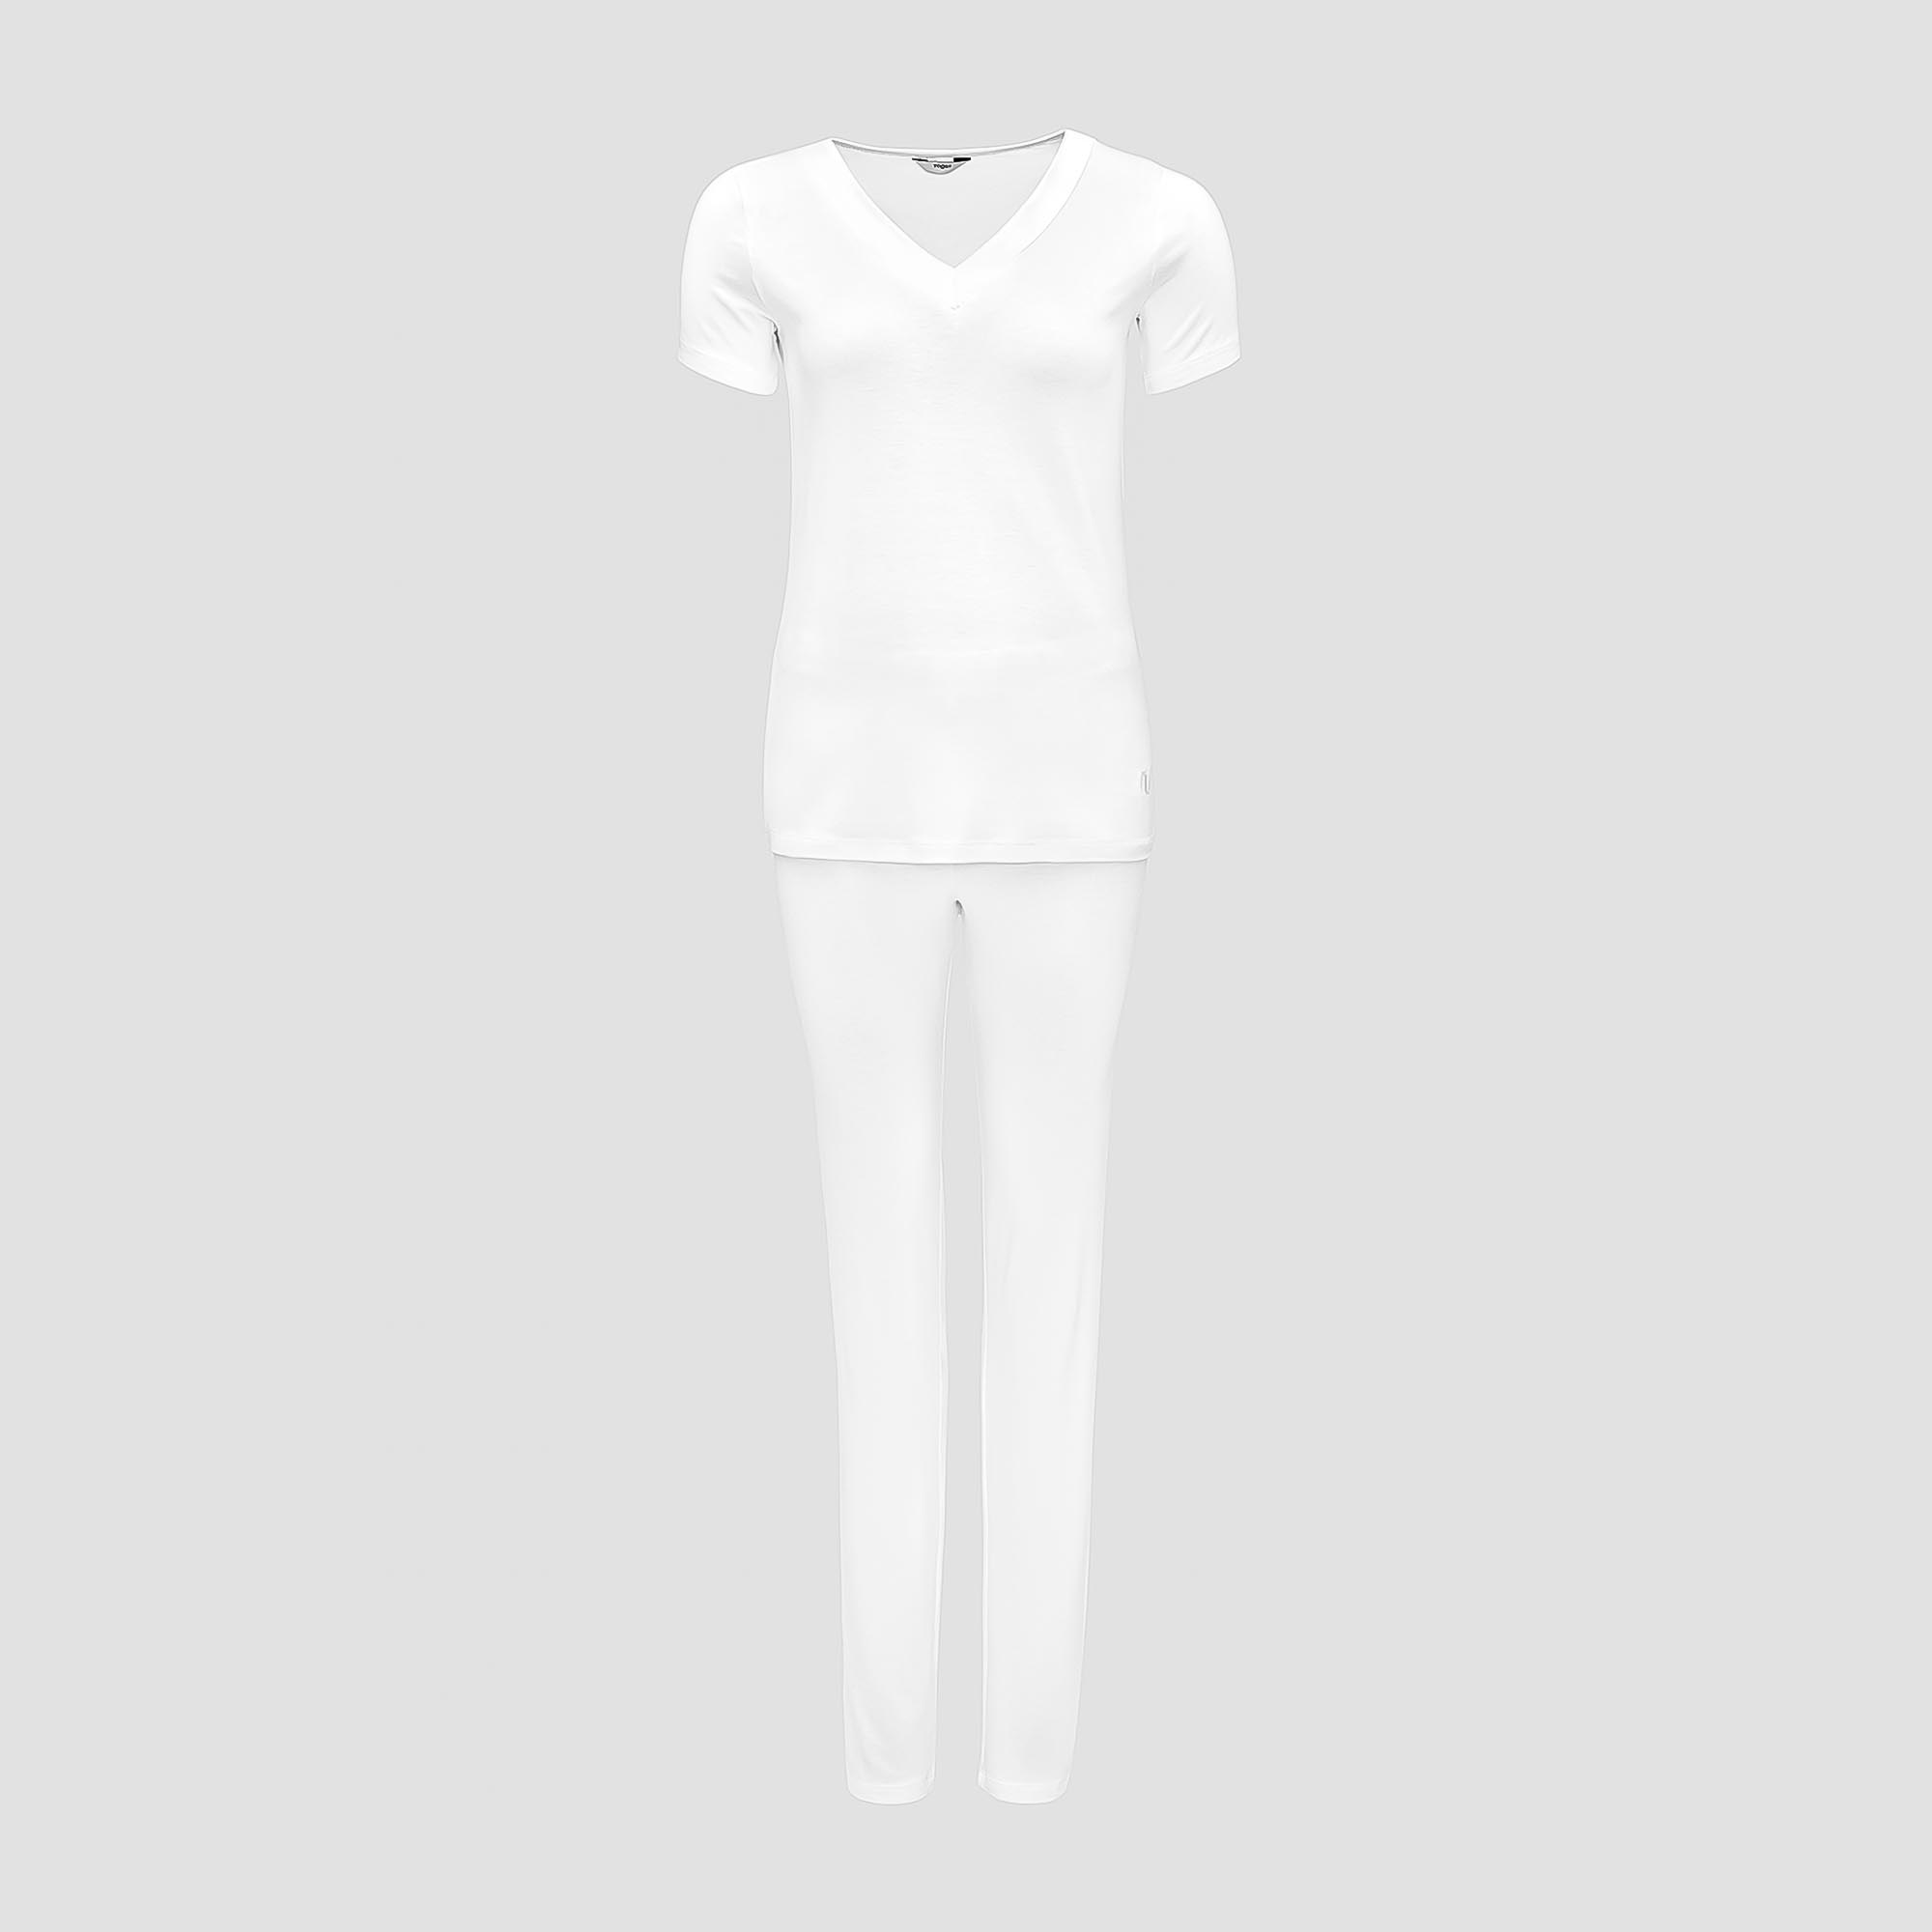 Пижама Togas Ингелла белая женская XL(50) 2 предмета жен пижама с шортами черри белый р 50